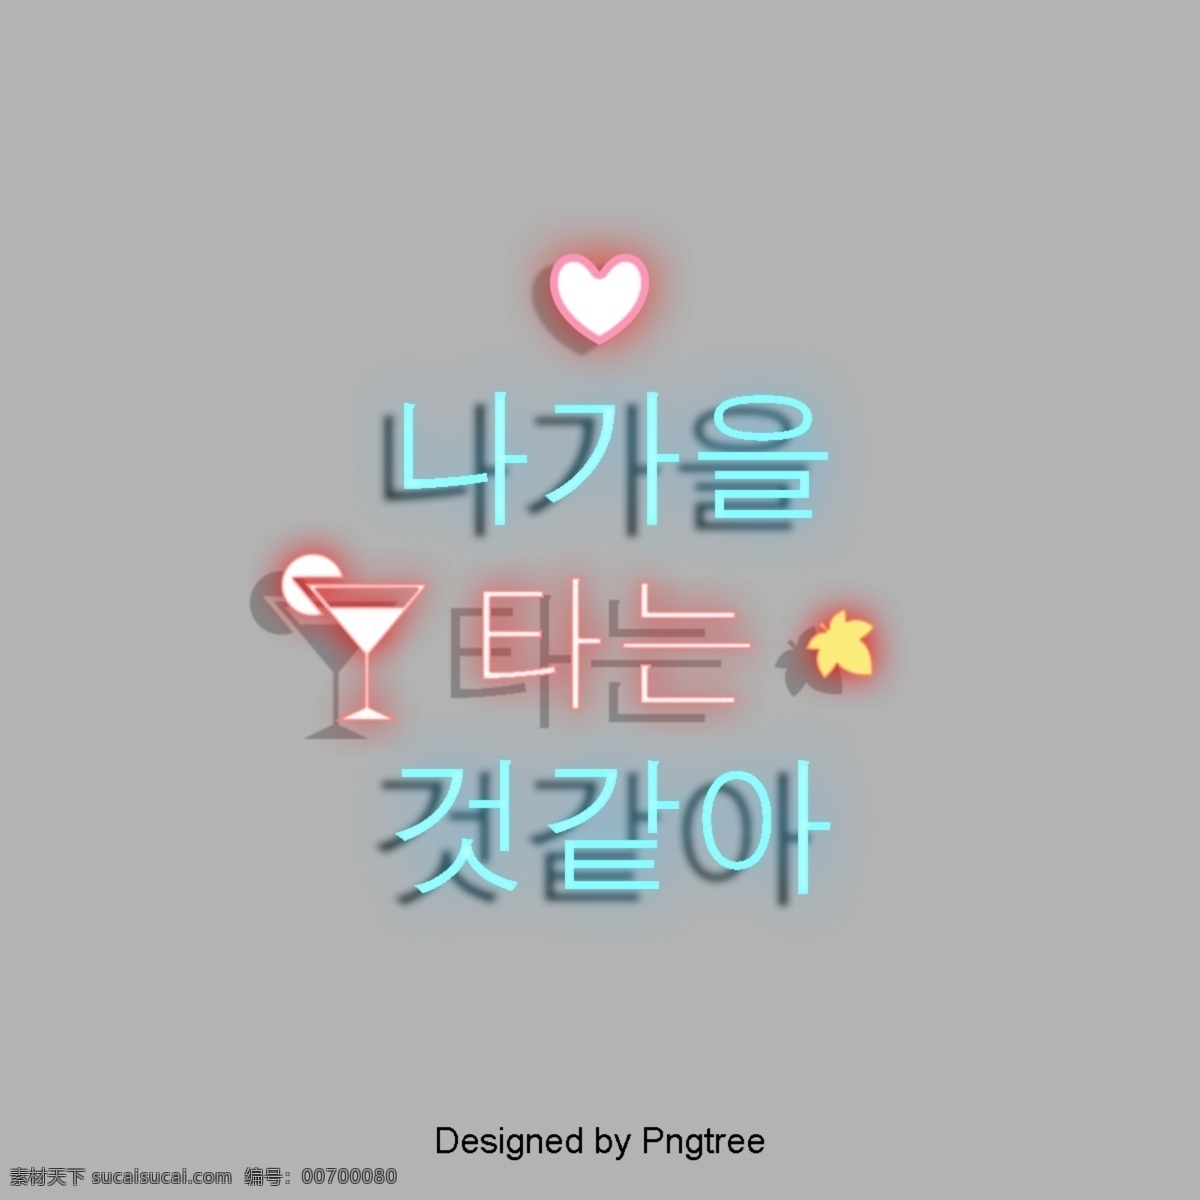 元素 霓虹 字体 简单 韩国 来自 ne 人 枫 心脏形 红酒 玻璃 场景的元素 白色和蓝色 红色 轻松的爱